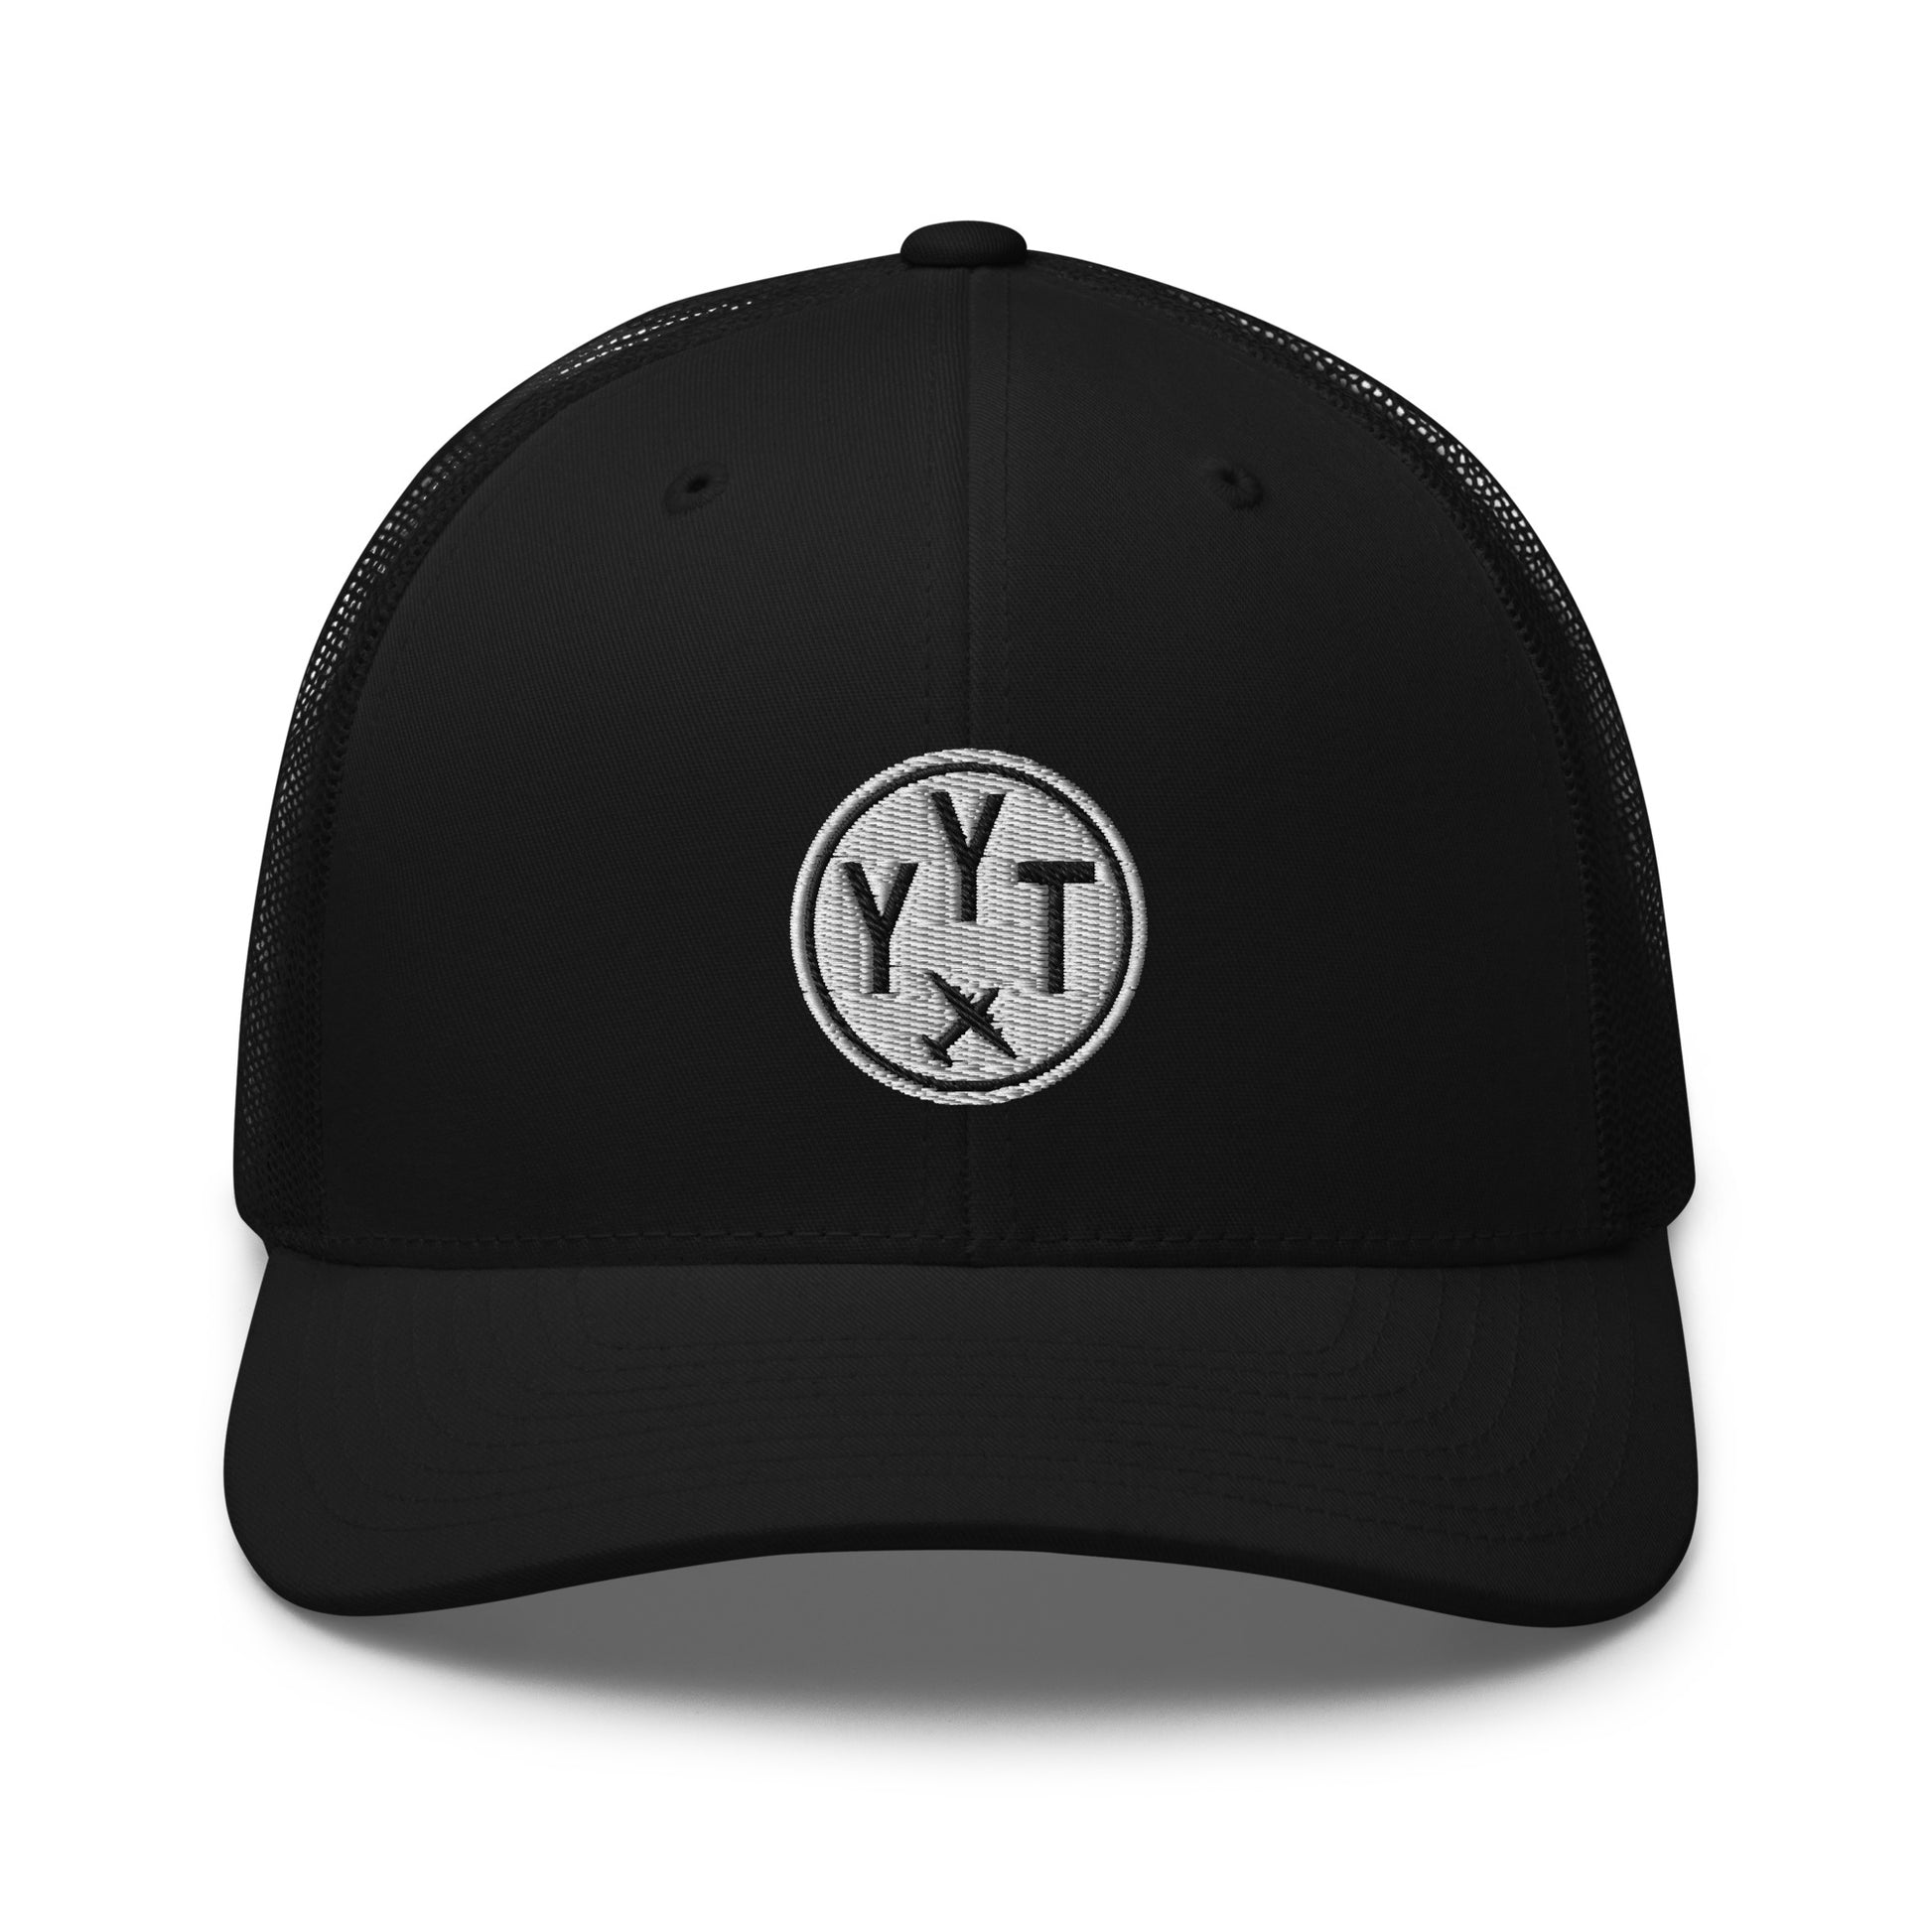 Roundel Trucker Hat - Black & White • YYT St. John's • YHM Designs - Image 06